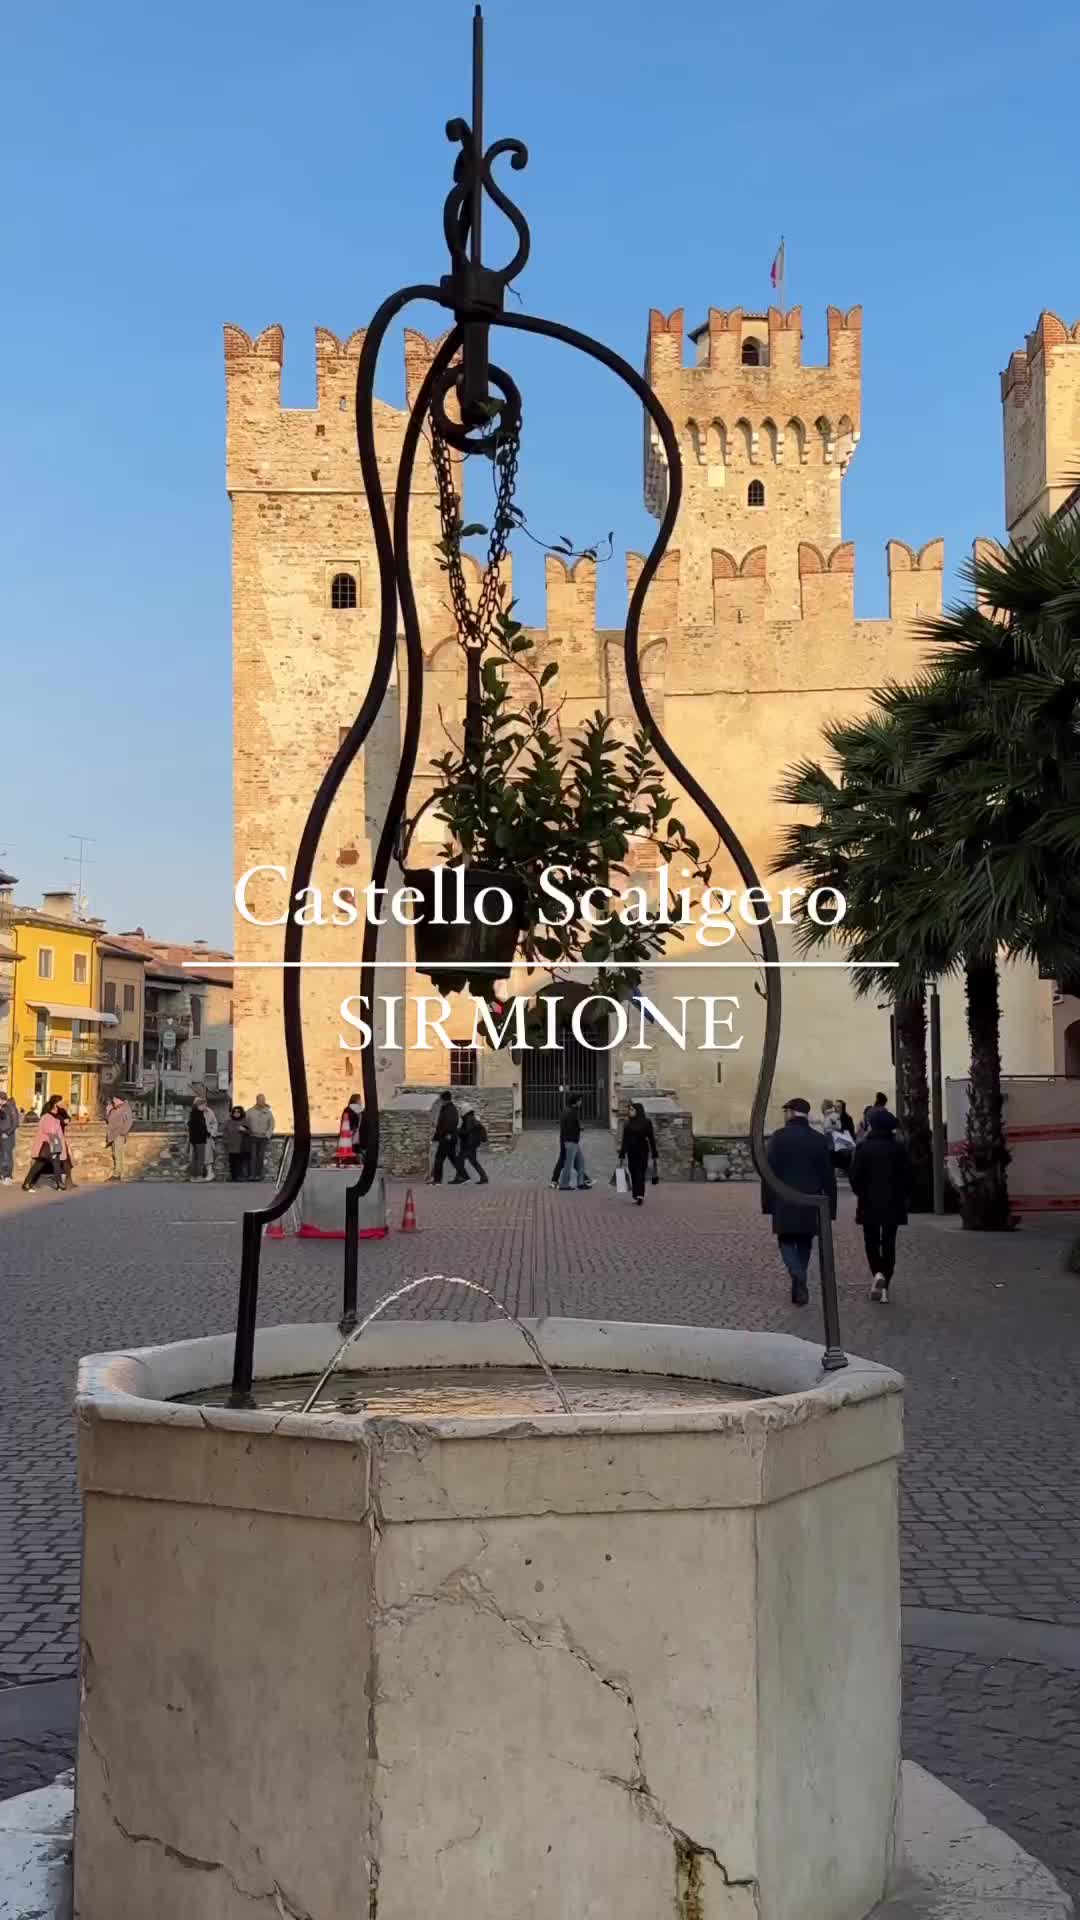 Discover Castello Scaligero in Sirmione, Lake Garda